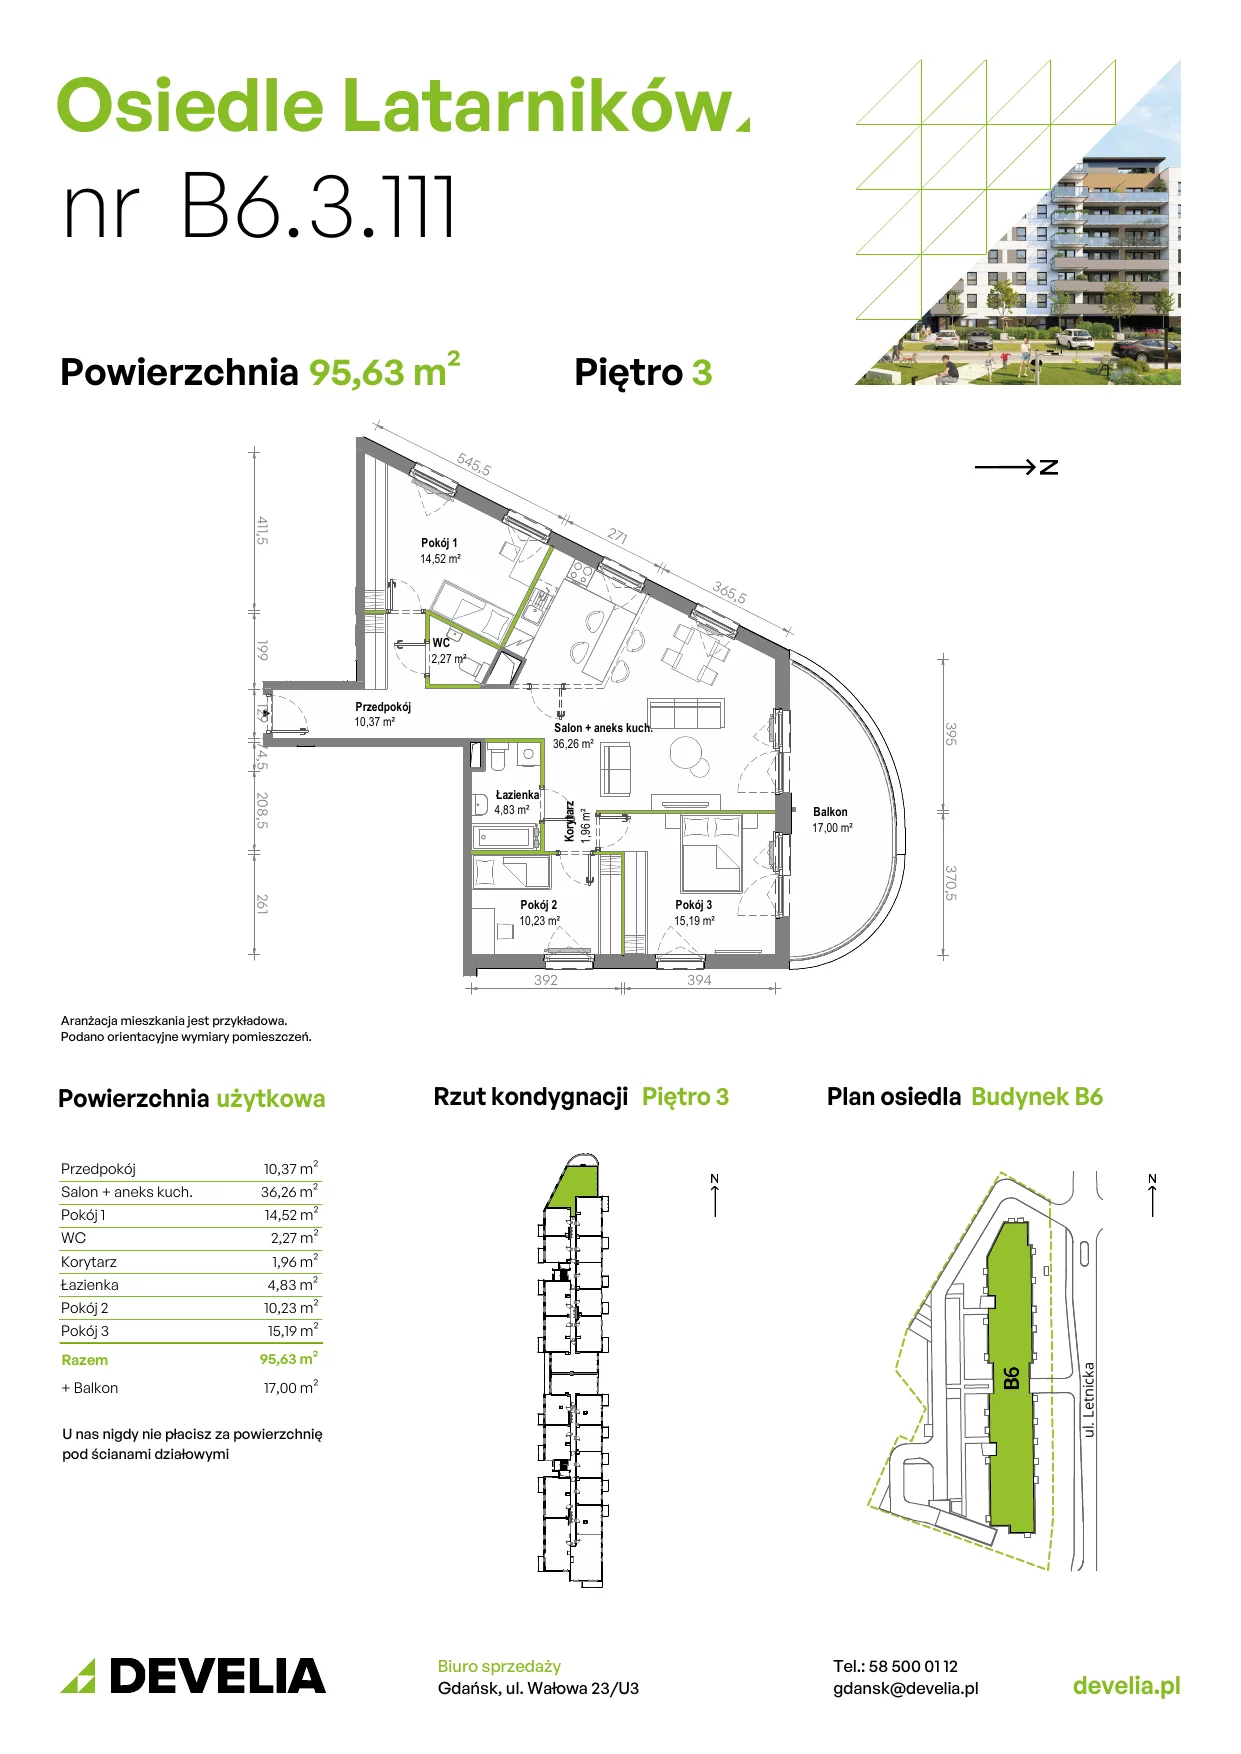 Mieszkanie 95,55 m², piętro 3, oferta nr B6.3.111, Osiedle Latarników, Gdańsk, Letnica, ul. Letnicka 1